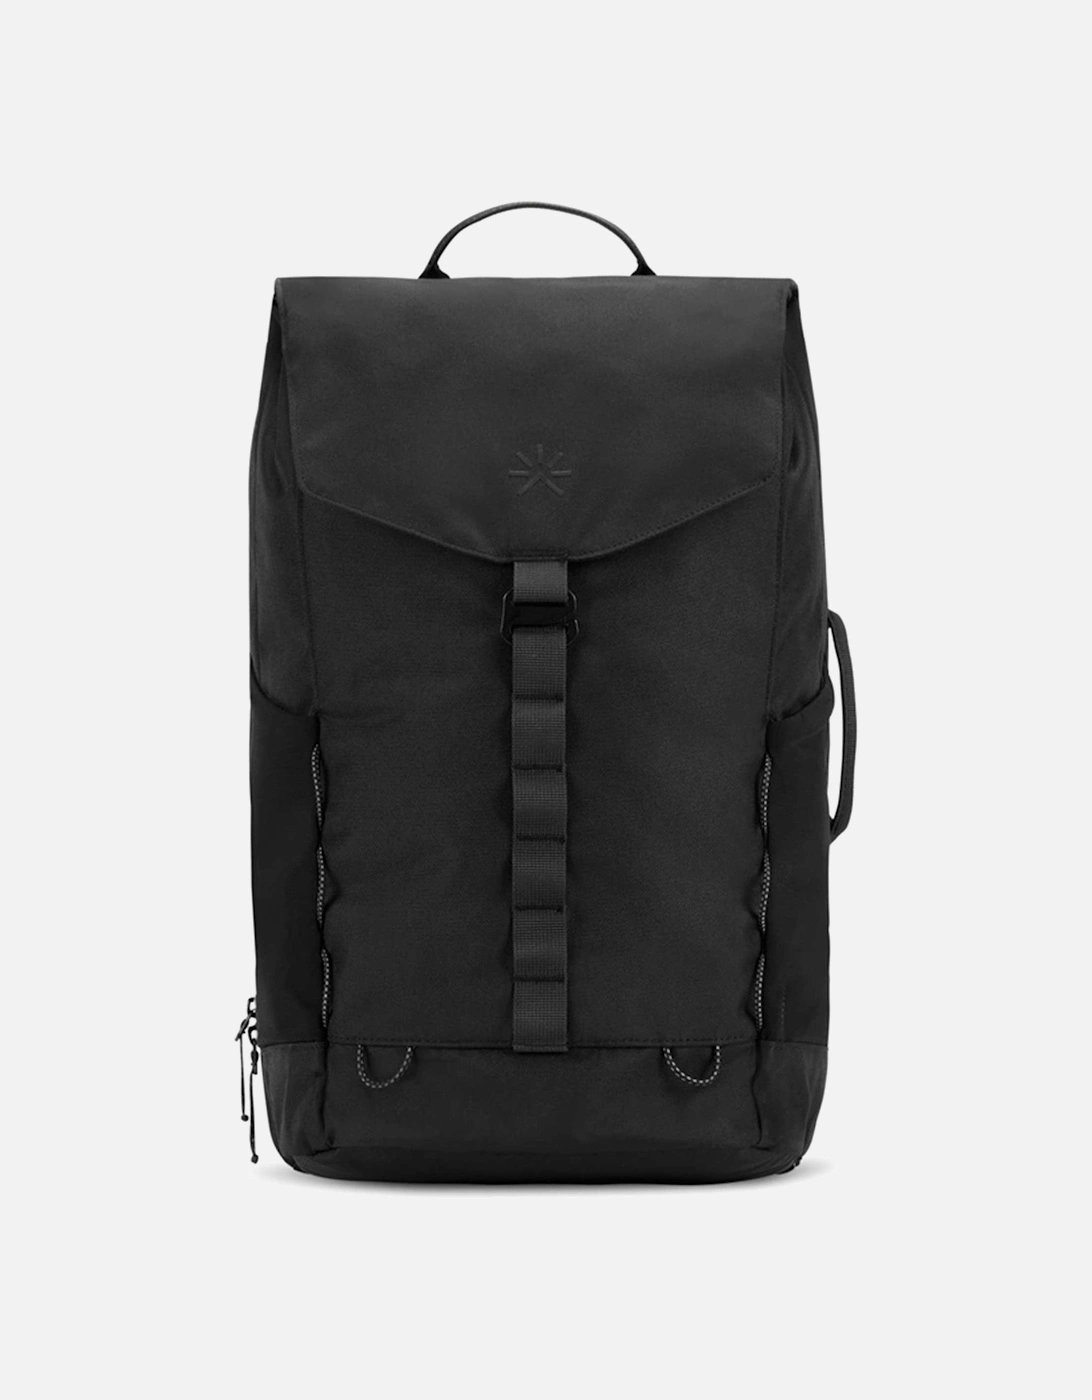 Nook Backpack, 8 of 7